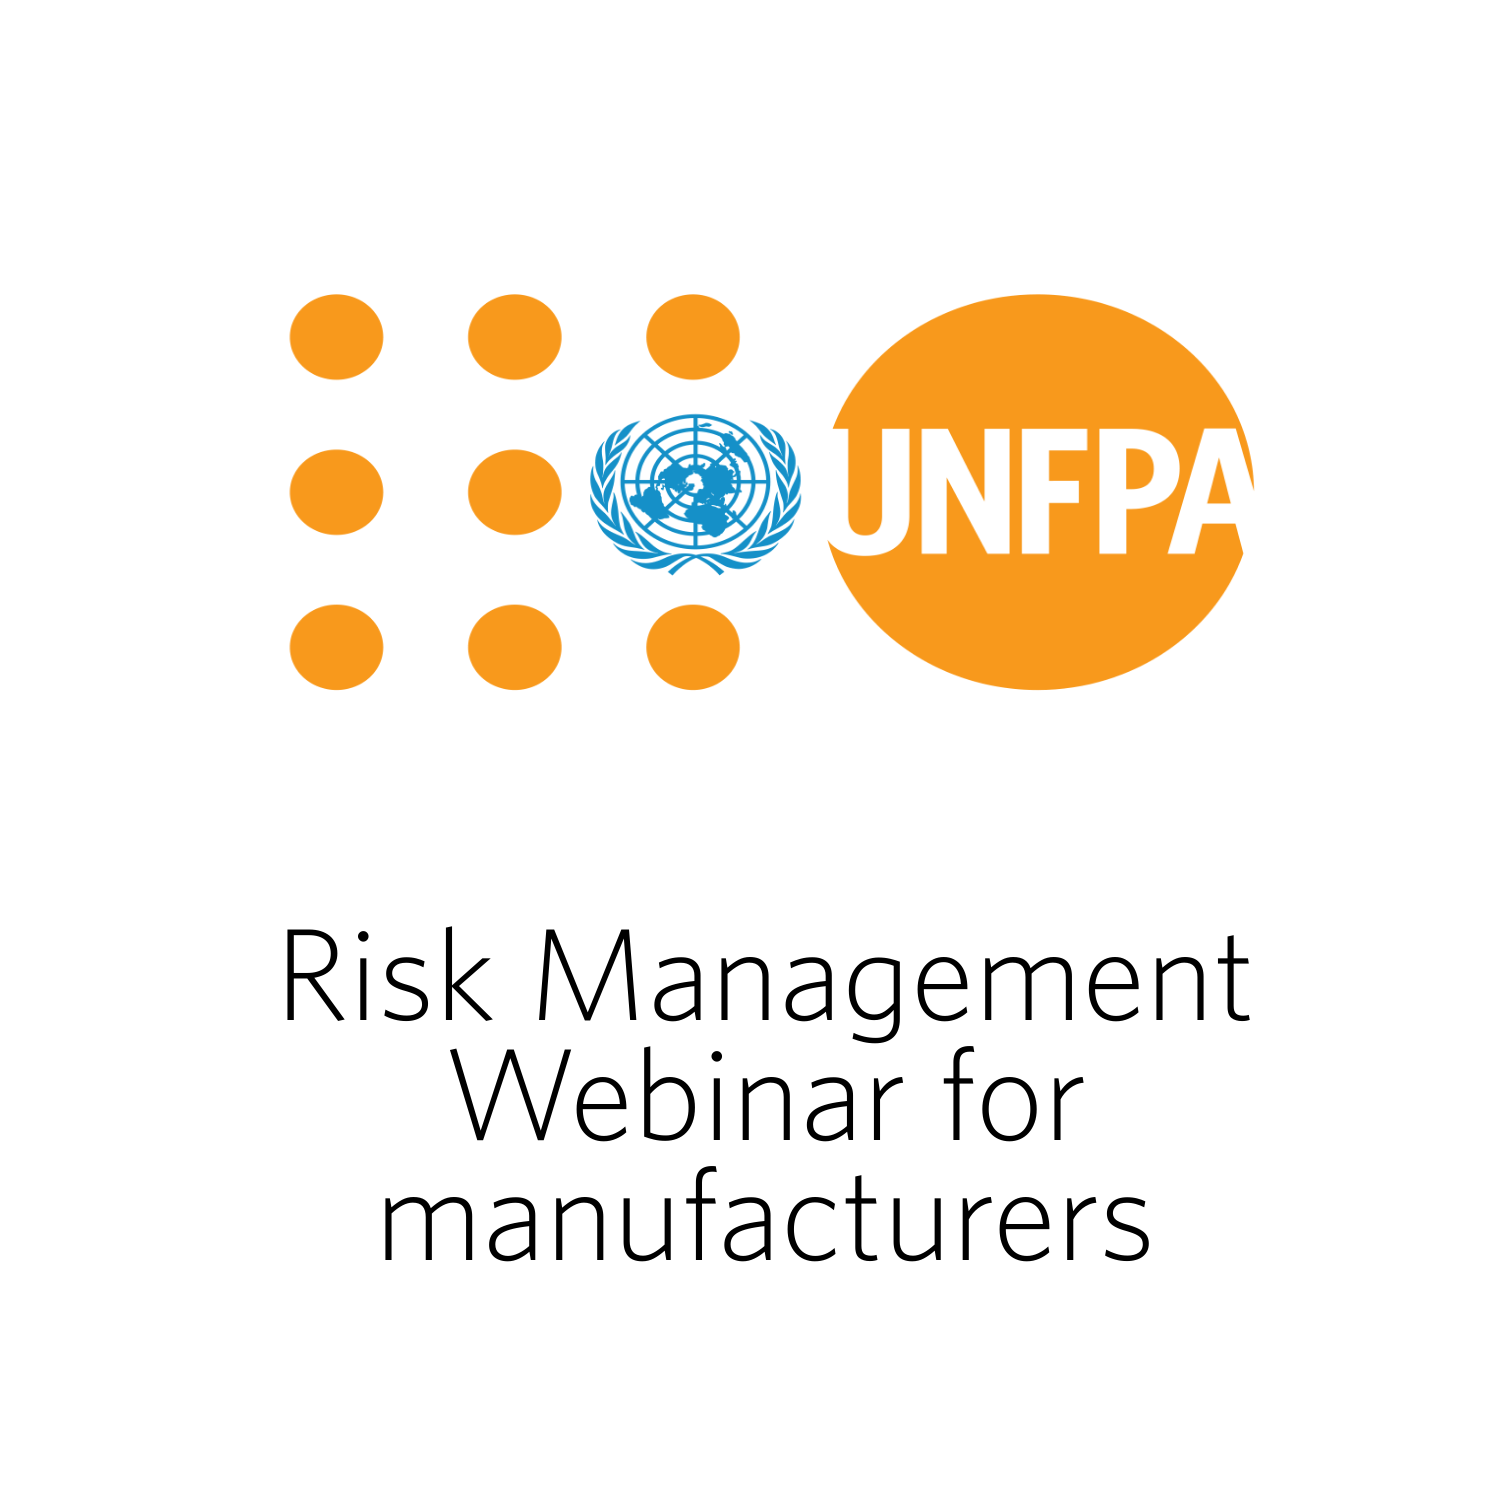 Risk Management Webinar for manufacturers